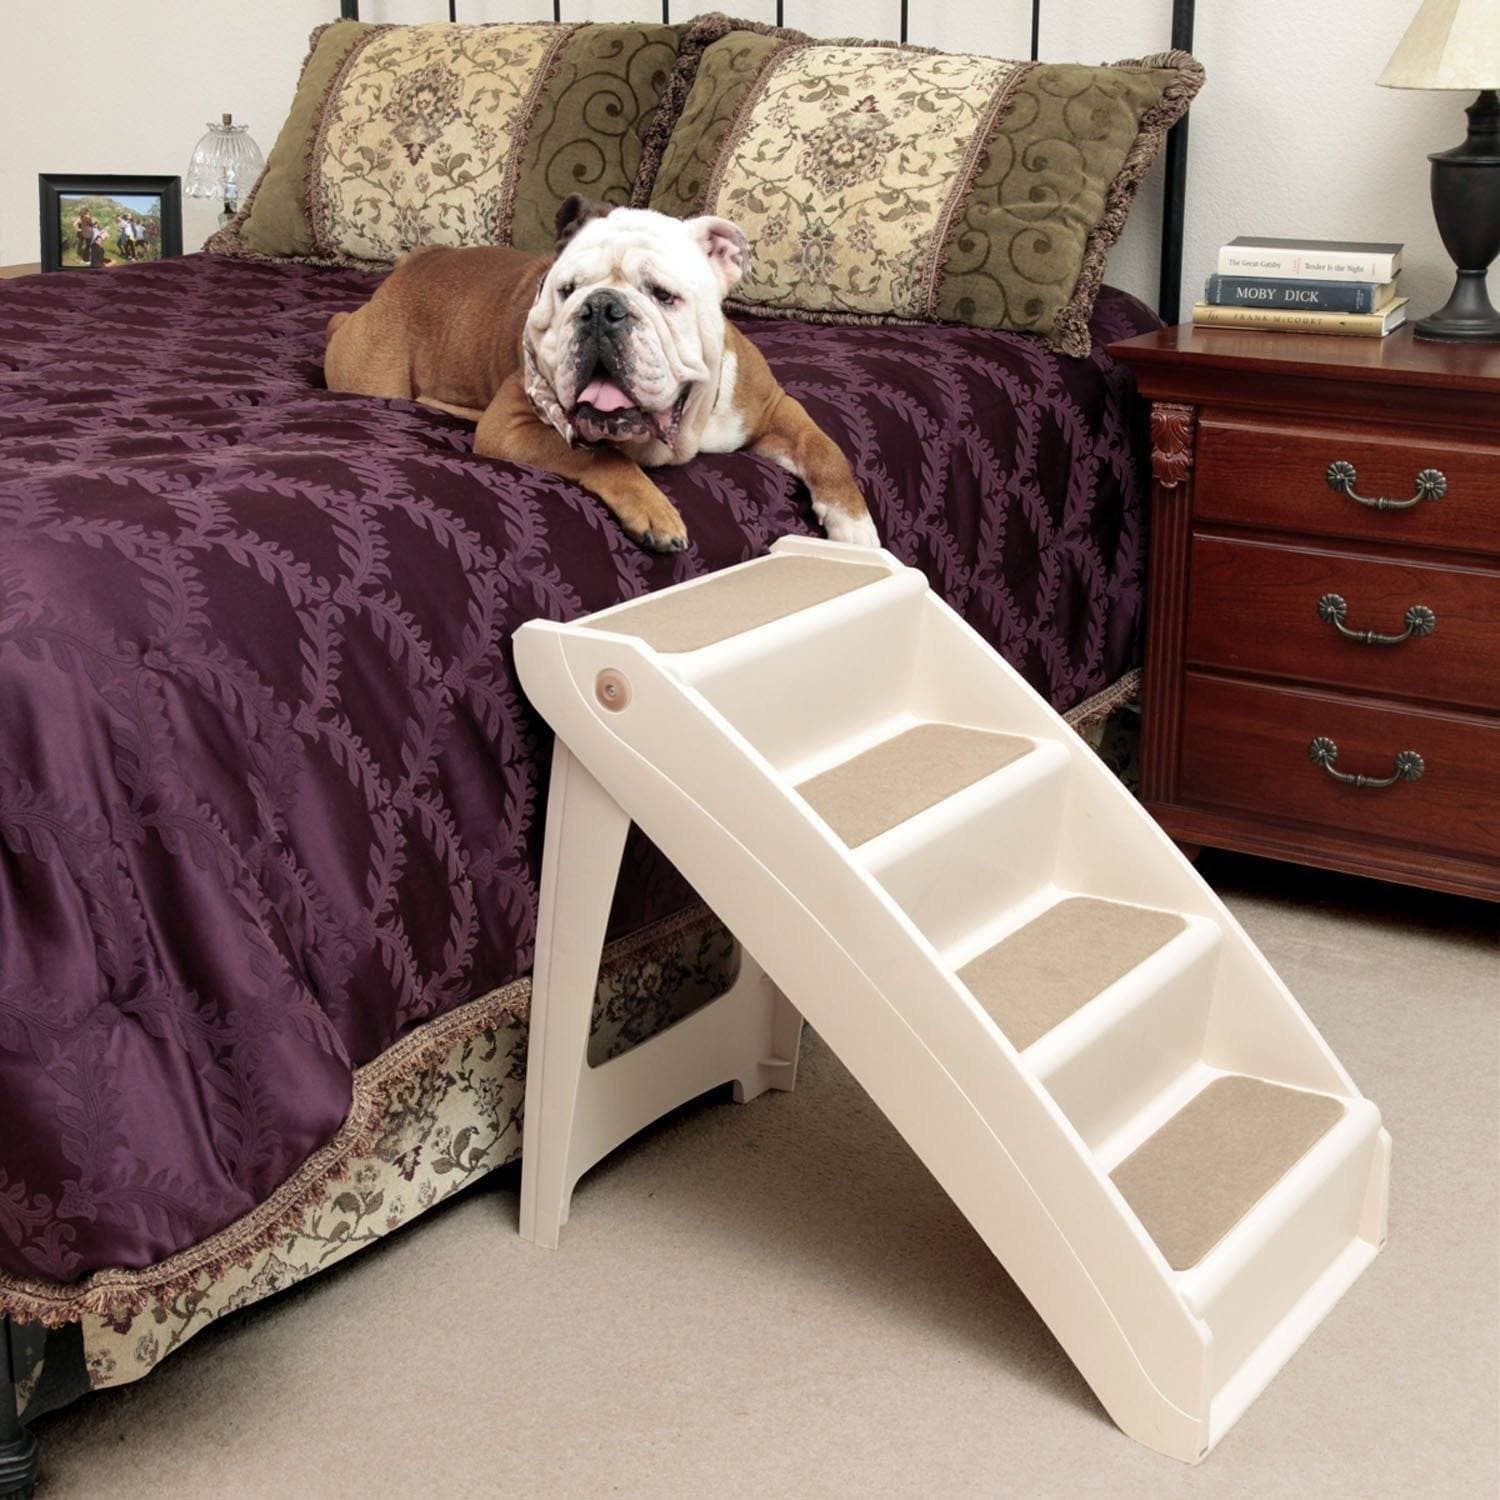 Cómo hacer una escalera para que mi perrito se suba a la cama?